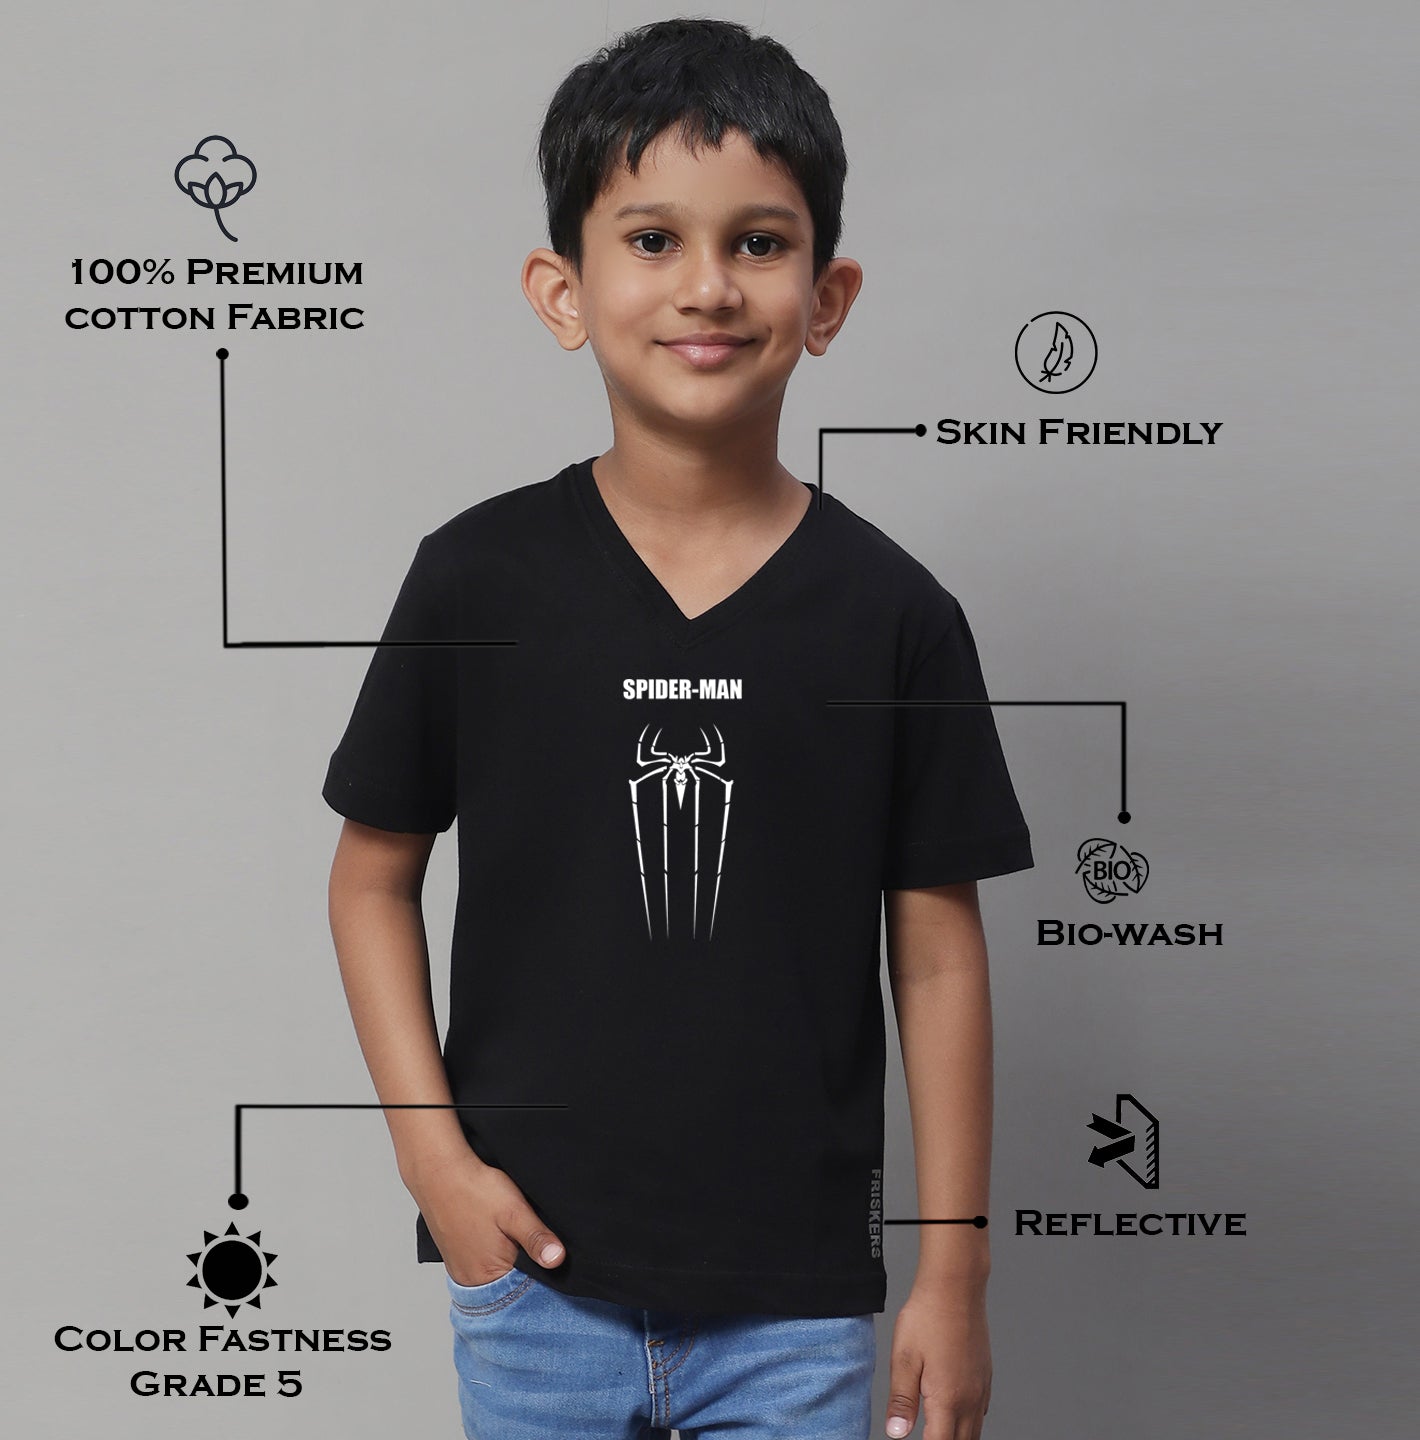 Boys Spiderman Half Sleeves Printed T-Shirt - Friskers